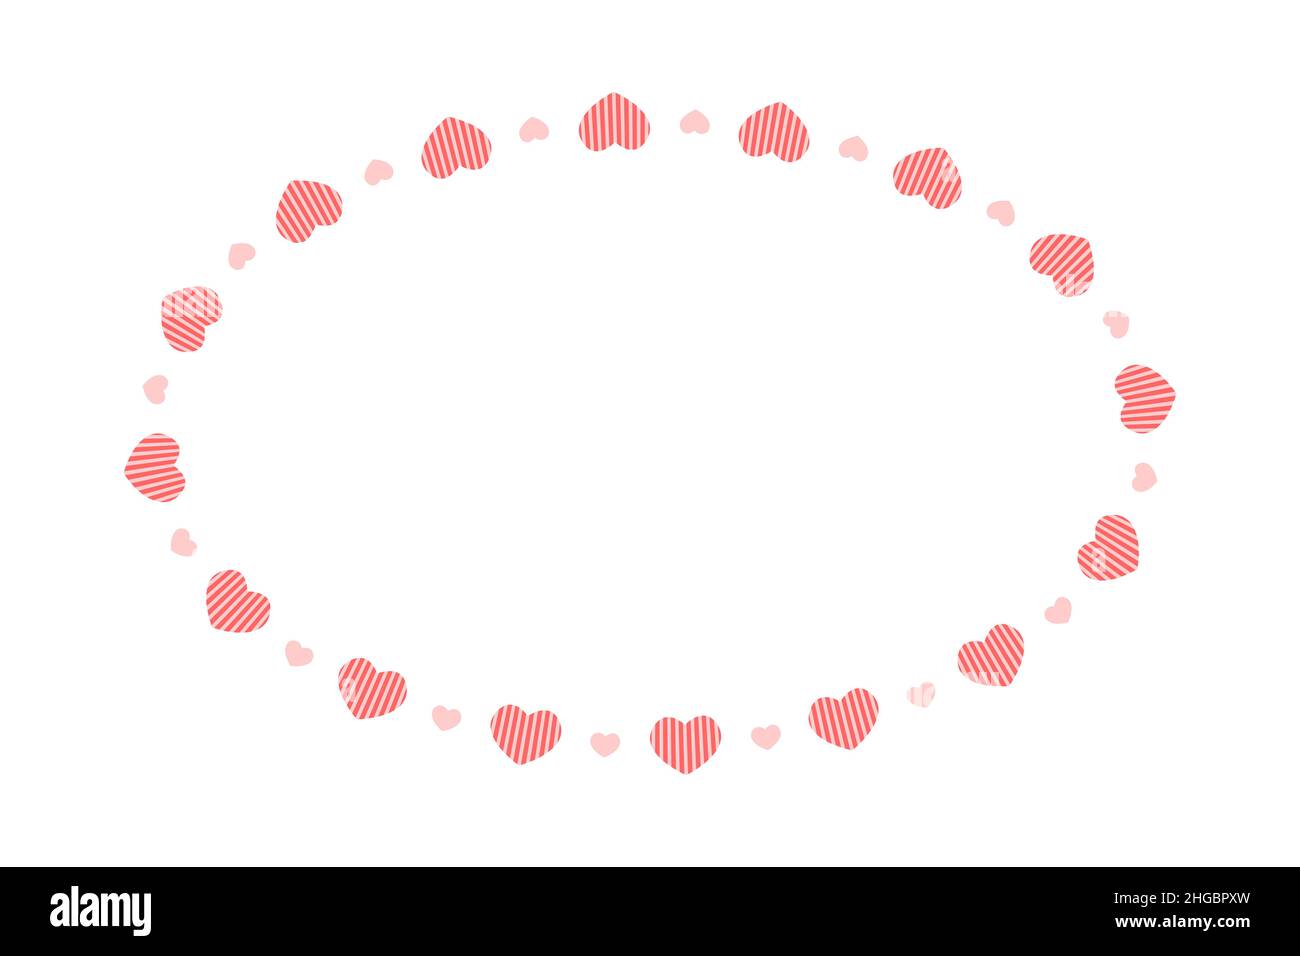 Ovaler Rahmen mit Herzen. Einfache Vorlage für Valentinskarte, Hochzeitseinladung, Foto, Bild, Banner. Flache Vektorgrafik isoliert auf weißem Hintergrund. Stock Vektor